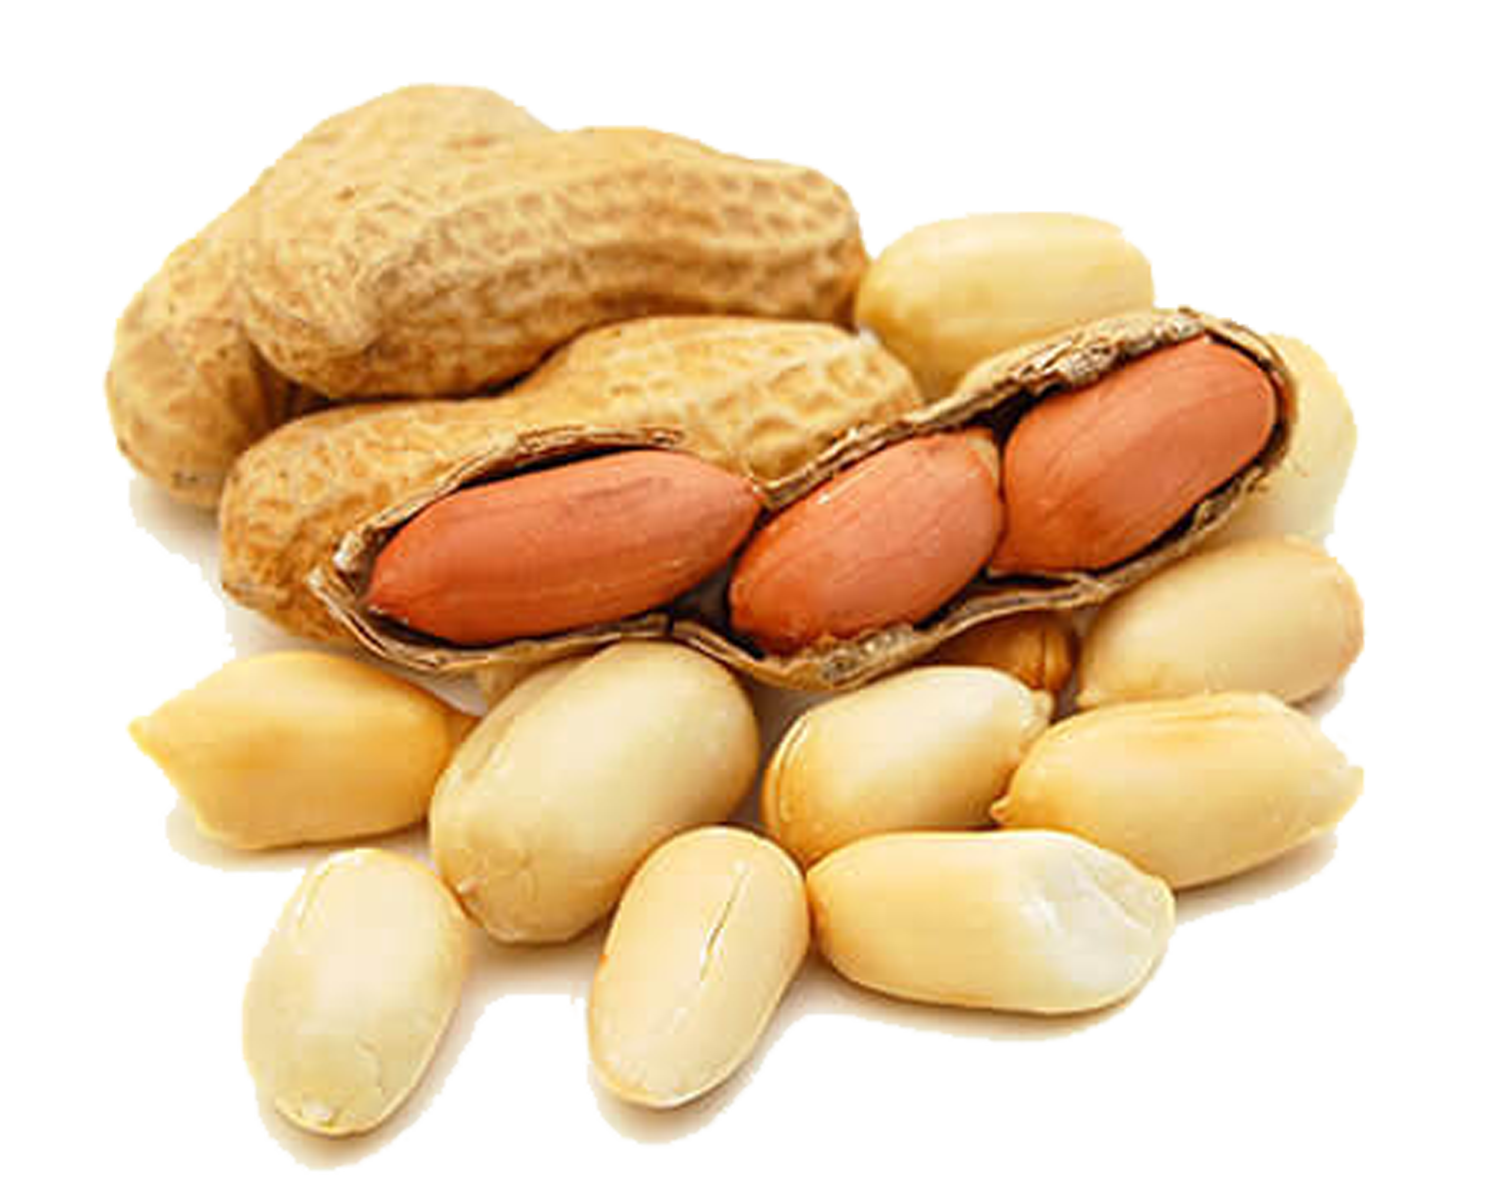 Арахис Peanuts. Арахисовые орехи. Земляной орех арахис. Арахис на белом фоне.